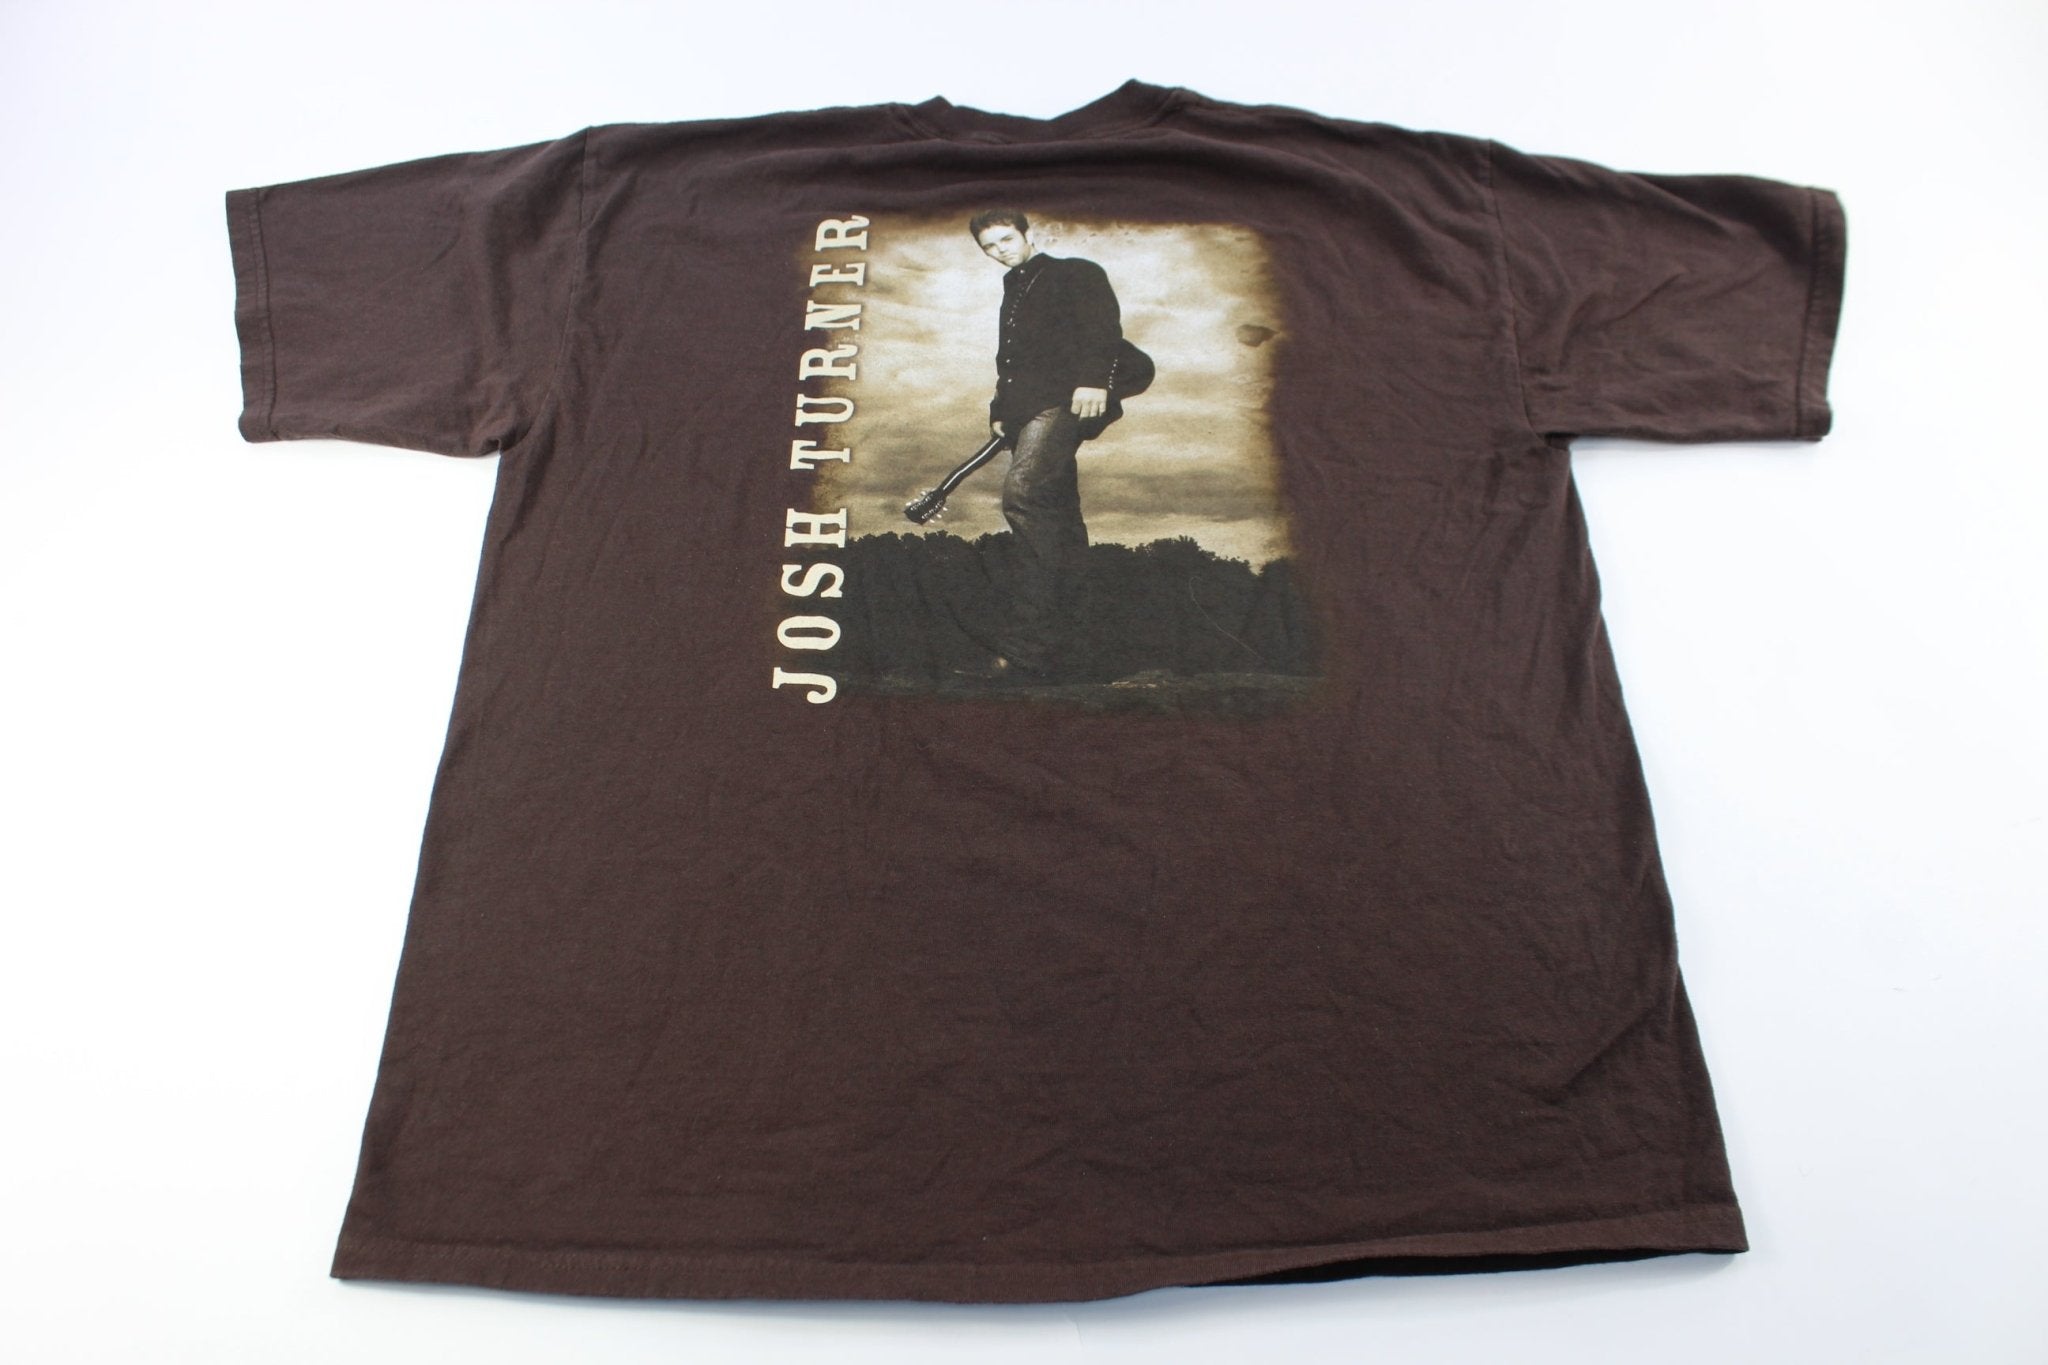 2003 Josh Tuner Long Black Train T-Shirt - ThriftedThreads.com